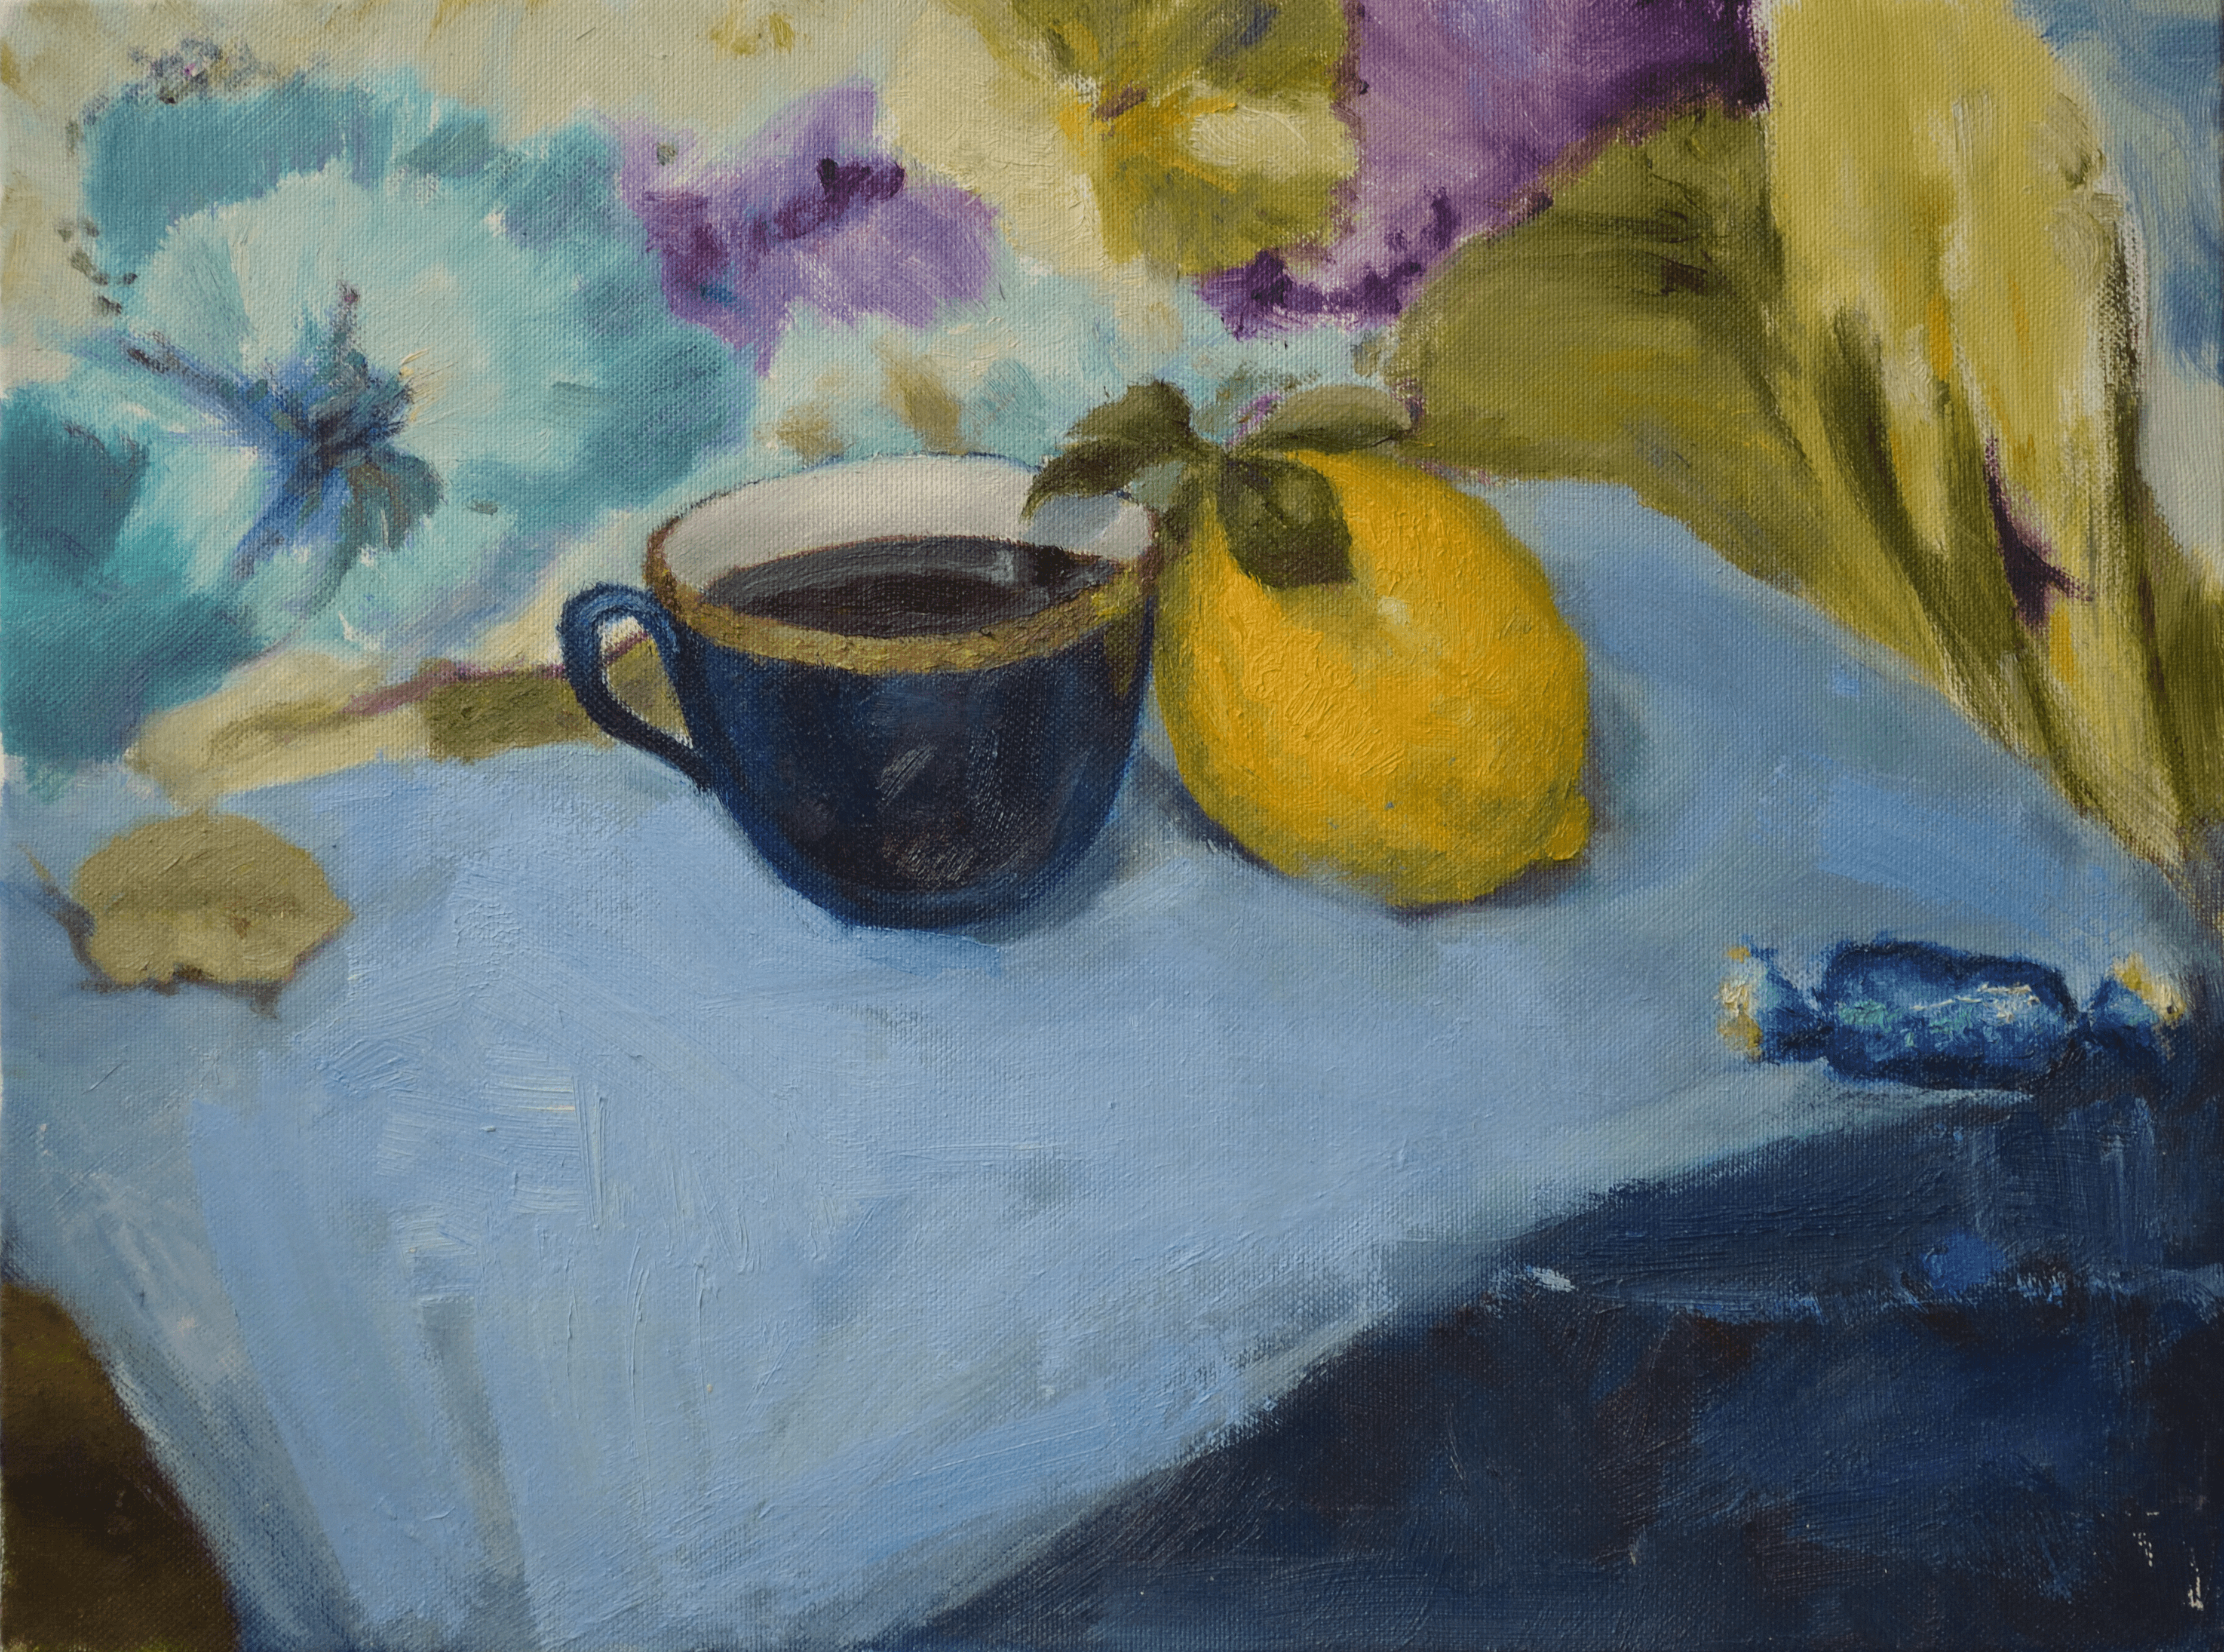 The Portrait of Tea with Lemon